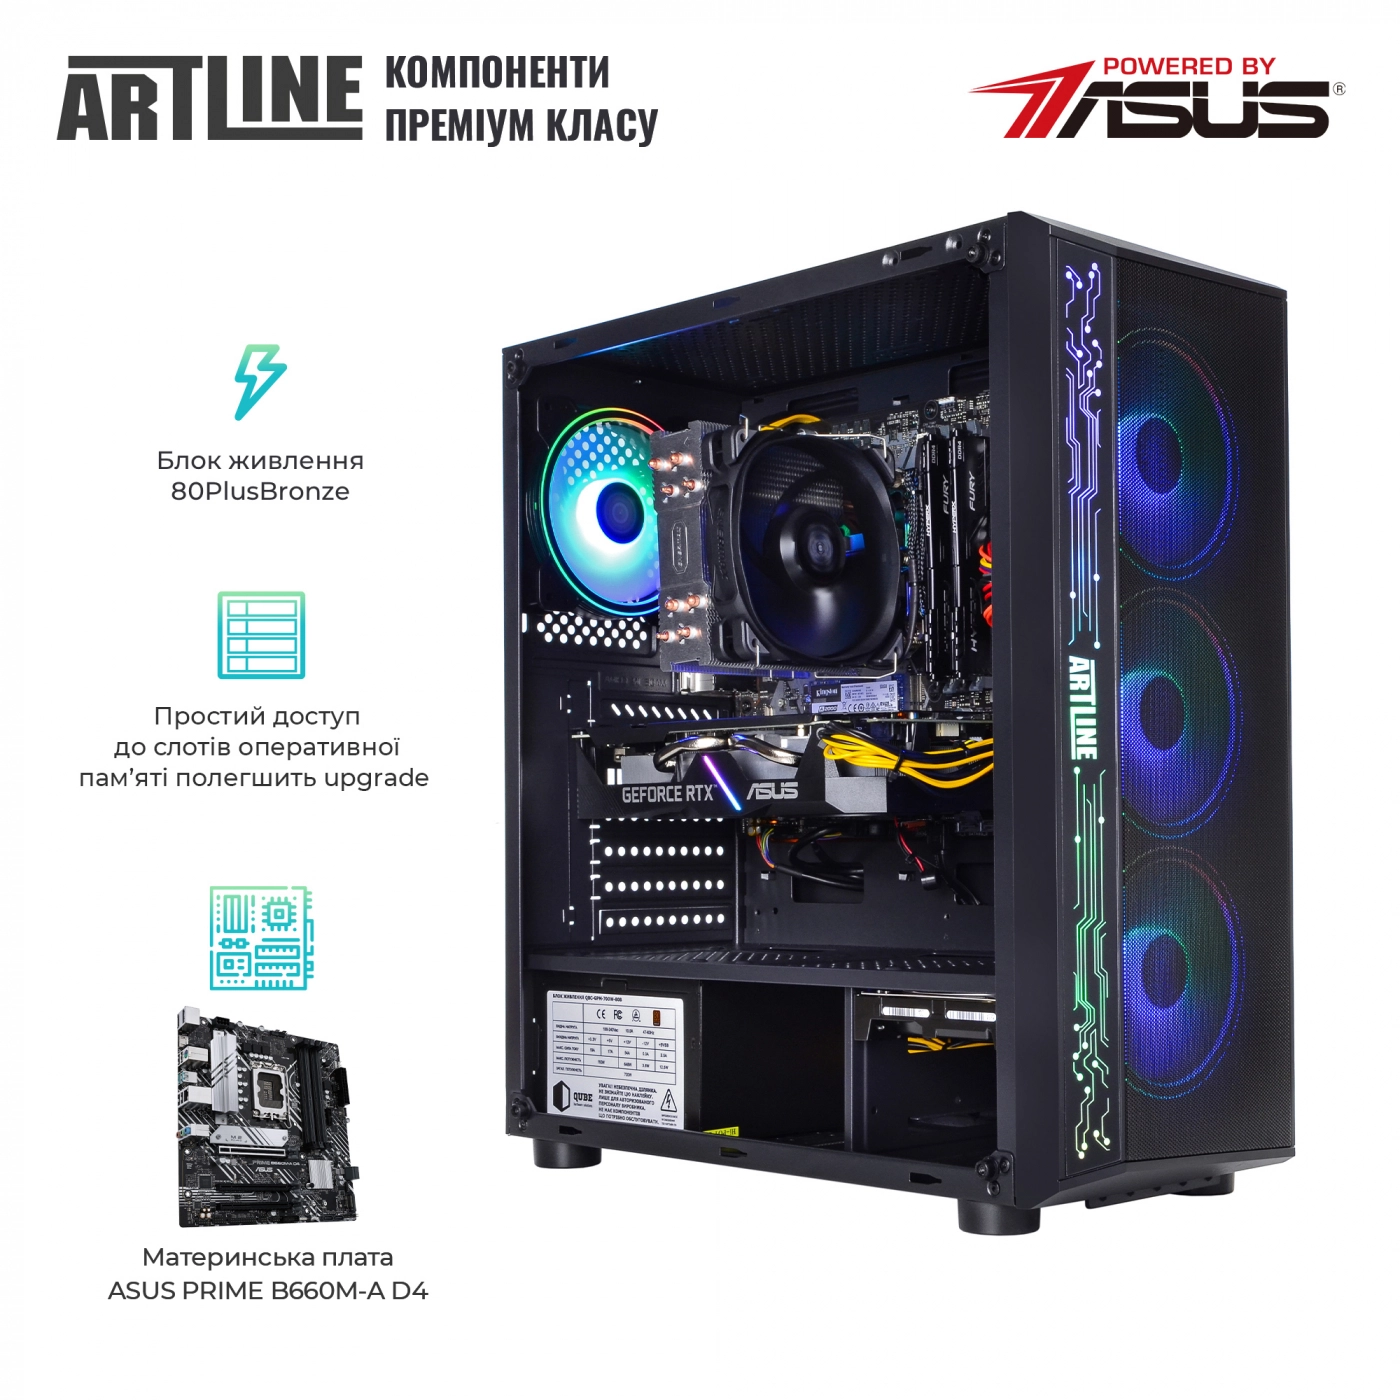 Купить Компьютер ARTLINE Gaming X55v44 - фото 3